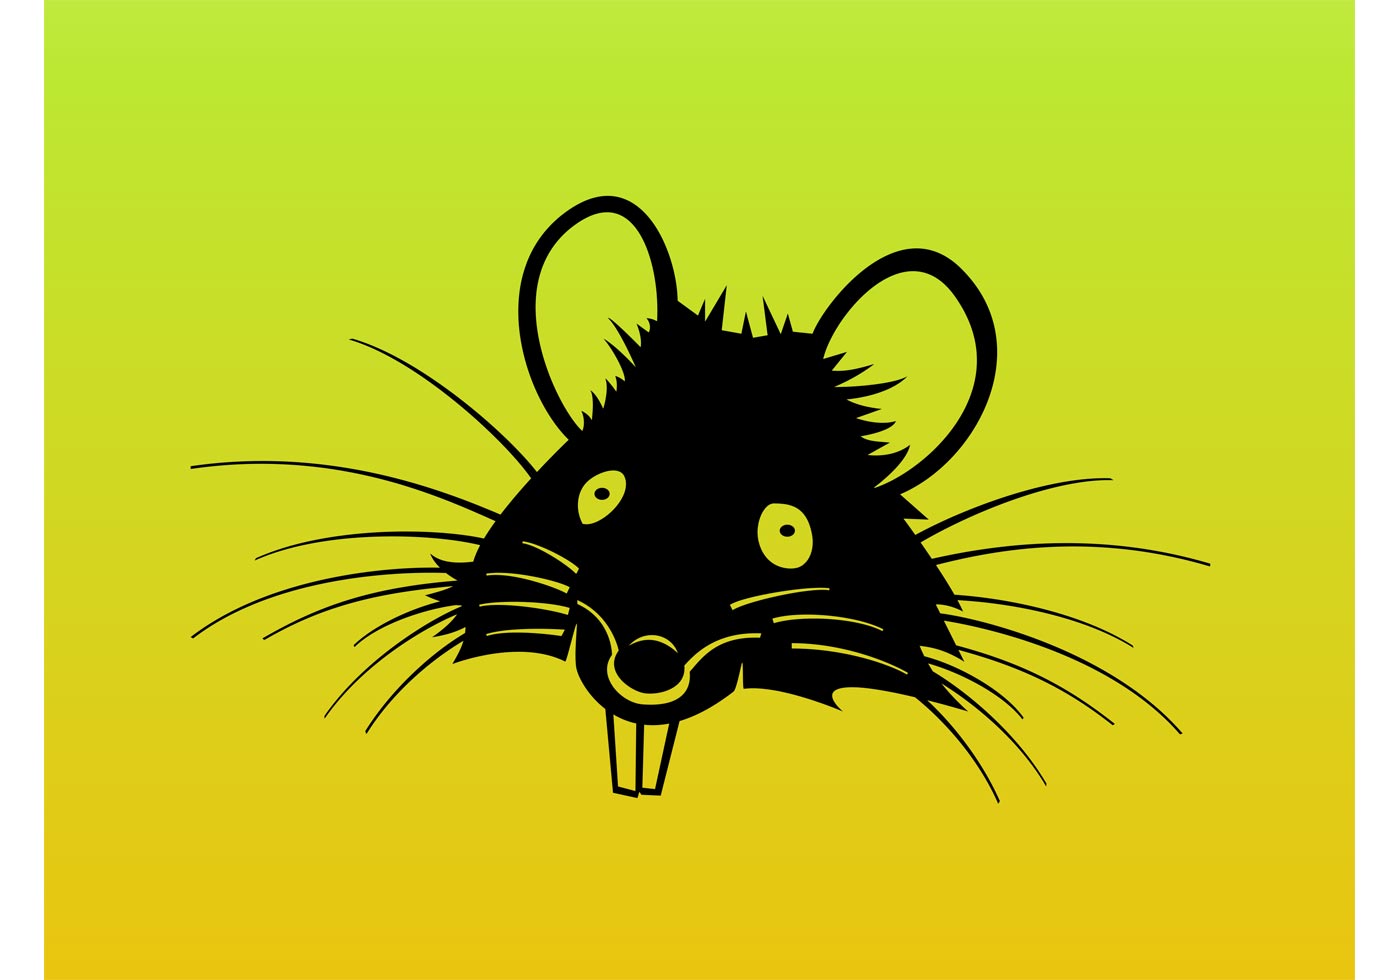 Download Rat Cartoon Vector - Download Free Vector Art, Stock ...